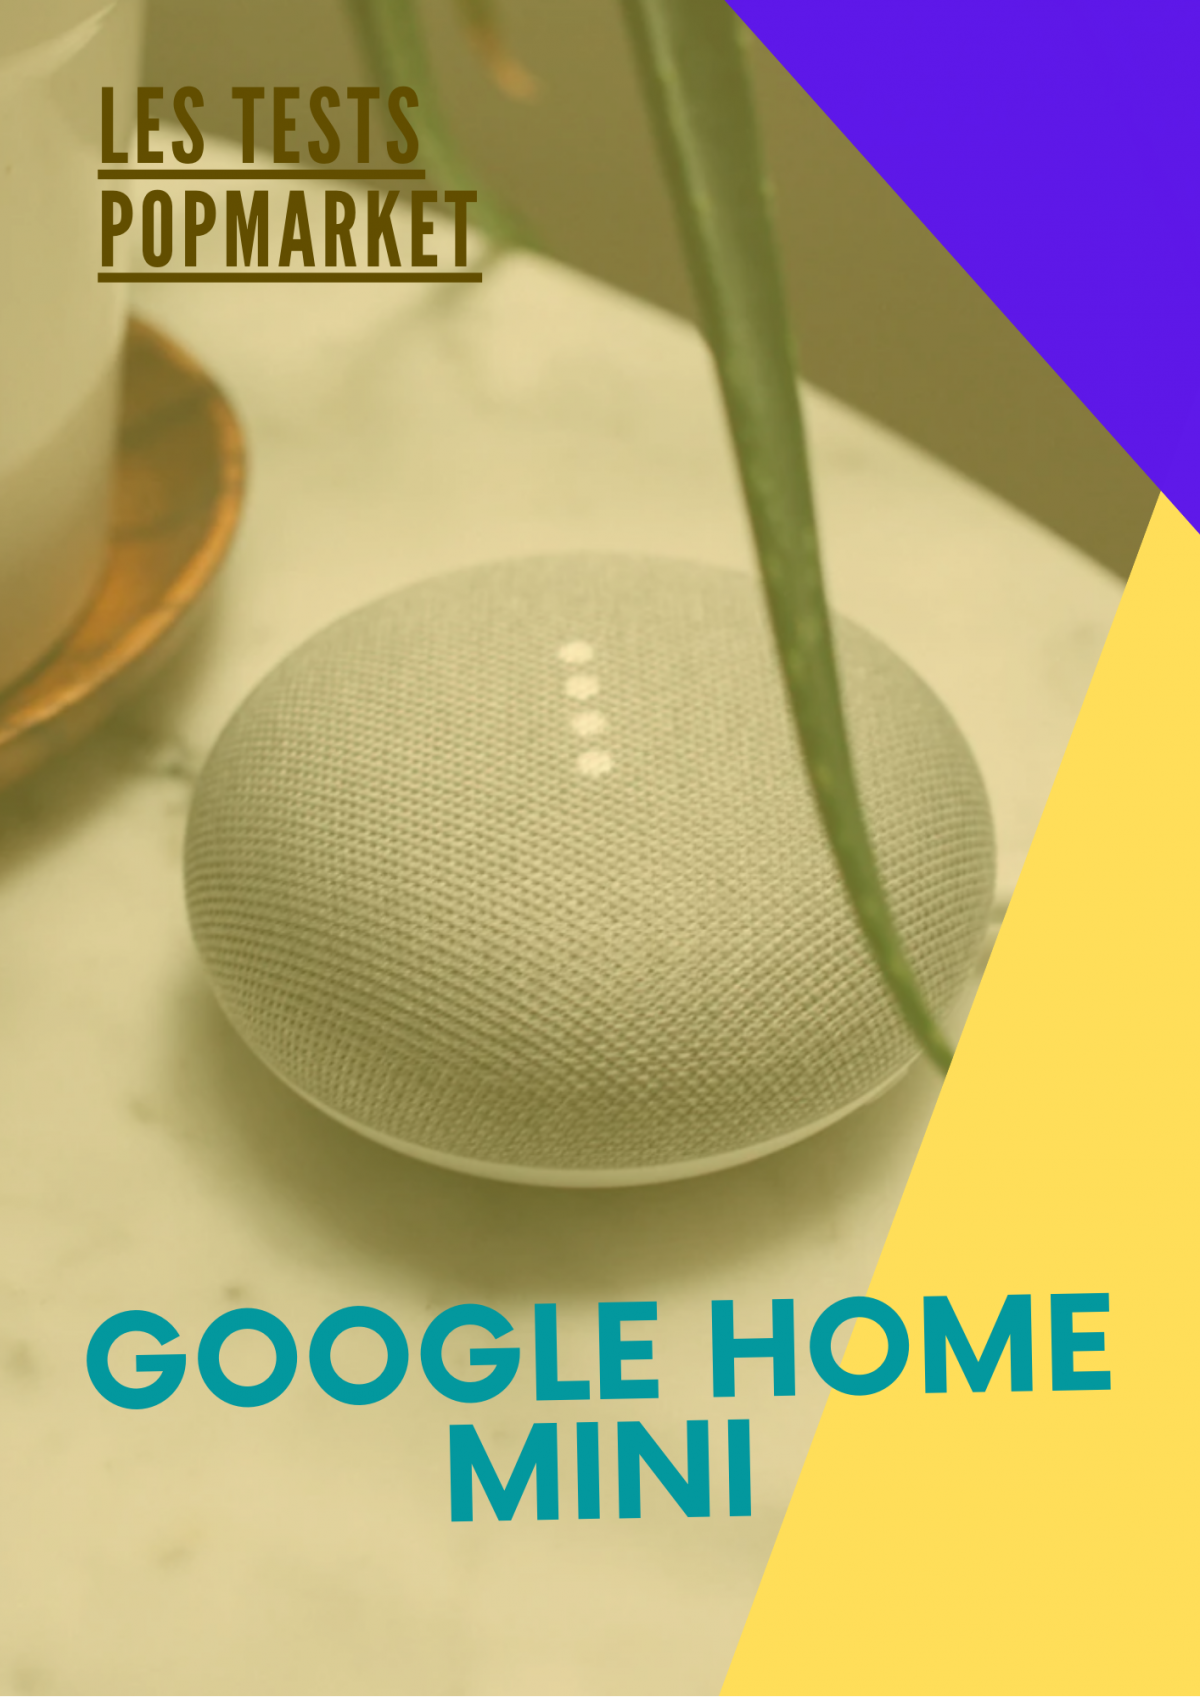 Google Assistant: Vos conversations avec une enceinte connectée